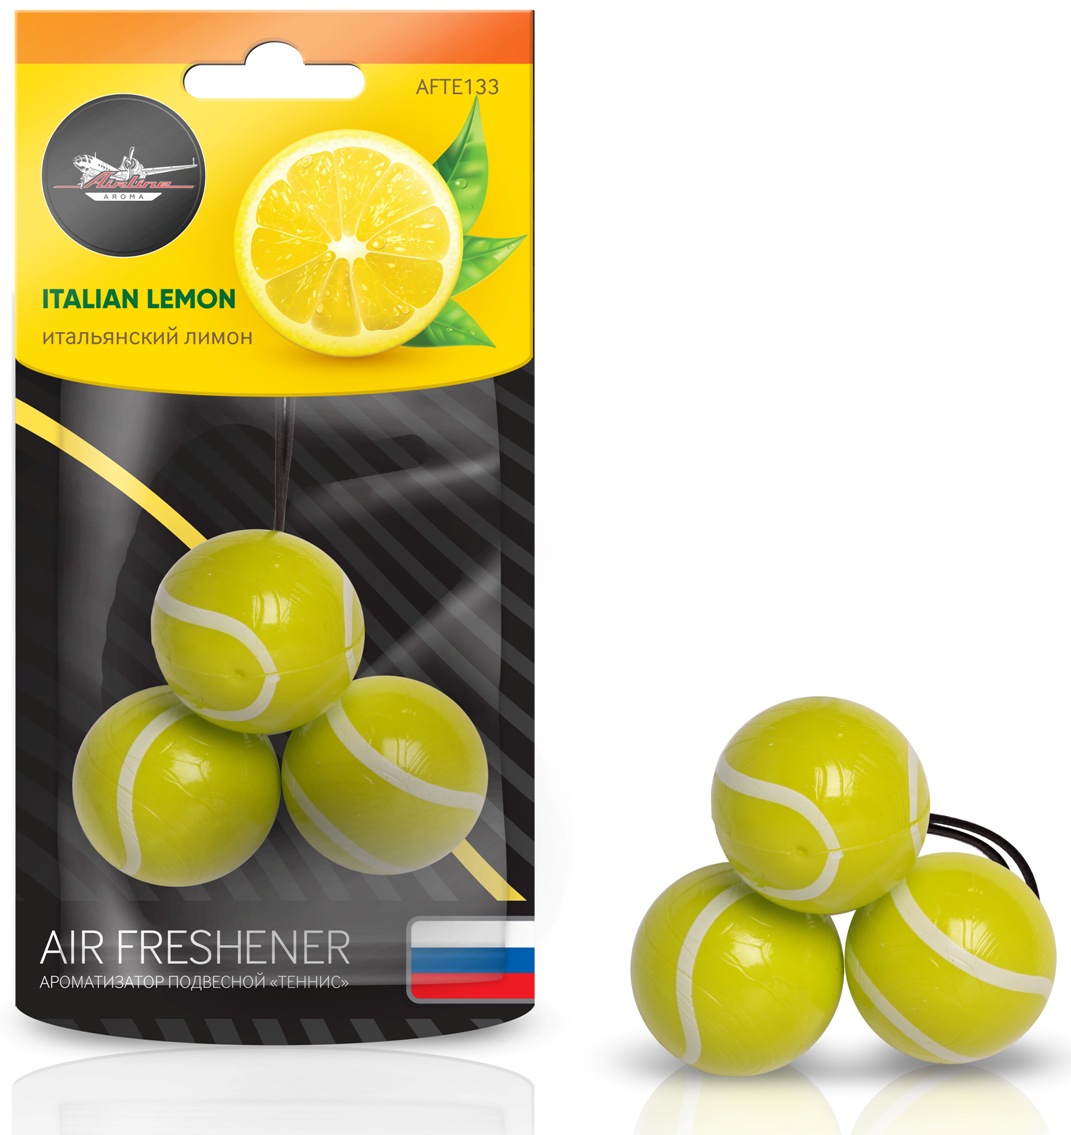 "Теннис" Итальянский лимон